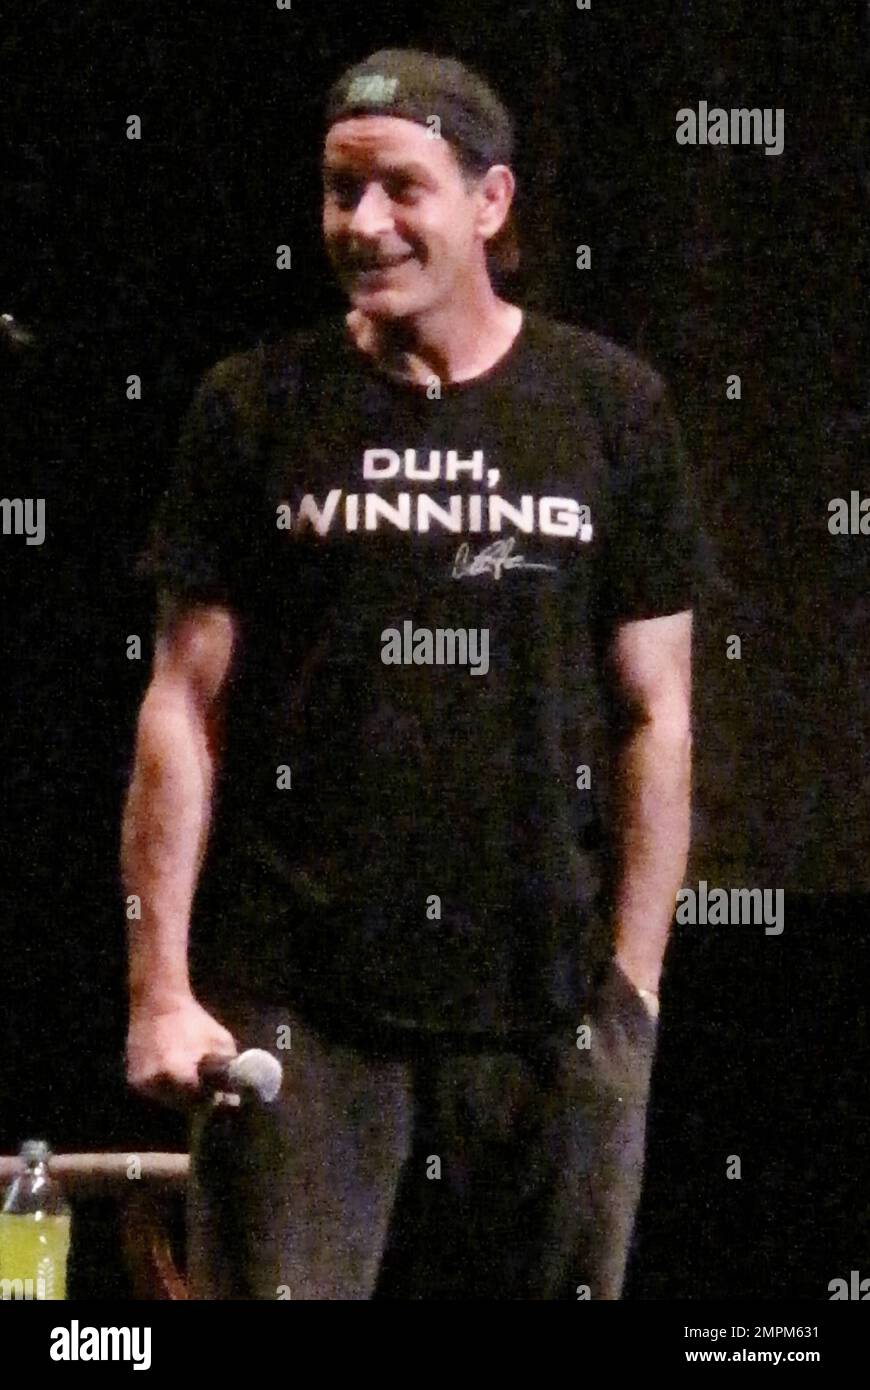 Charlie Sheen effectue sa tournée « Ma violente torpille de vérité/défaite  n'est pas une option » au Centre BankAtlantic. Sheen portait une chemise  indiquant « Duh, Winning » et une casquette de